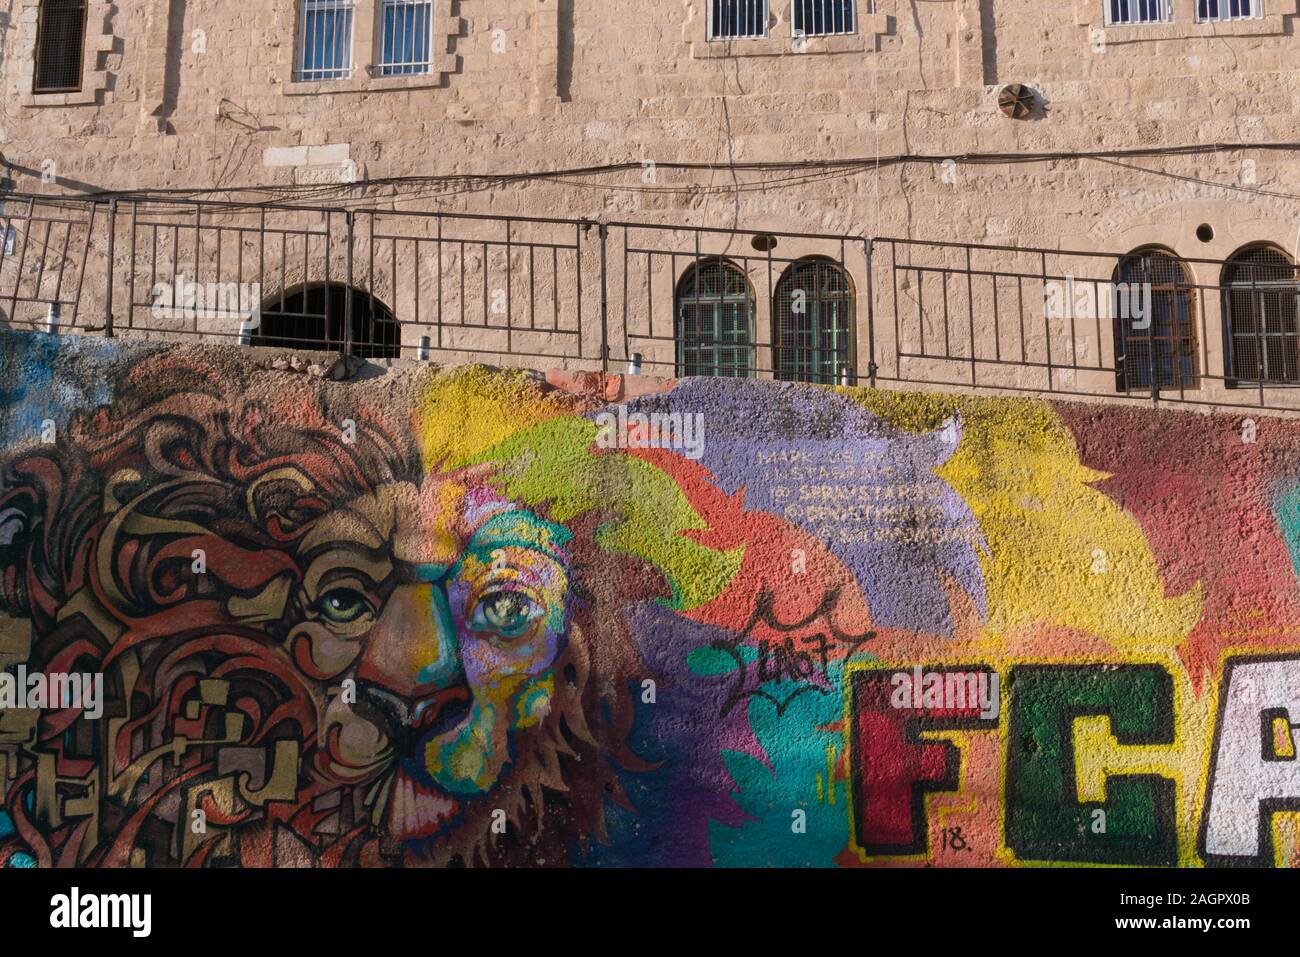 Graffiti di un leone nella città vecchia di Gerusalemme, Israele Foto Stock